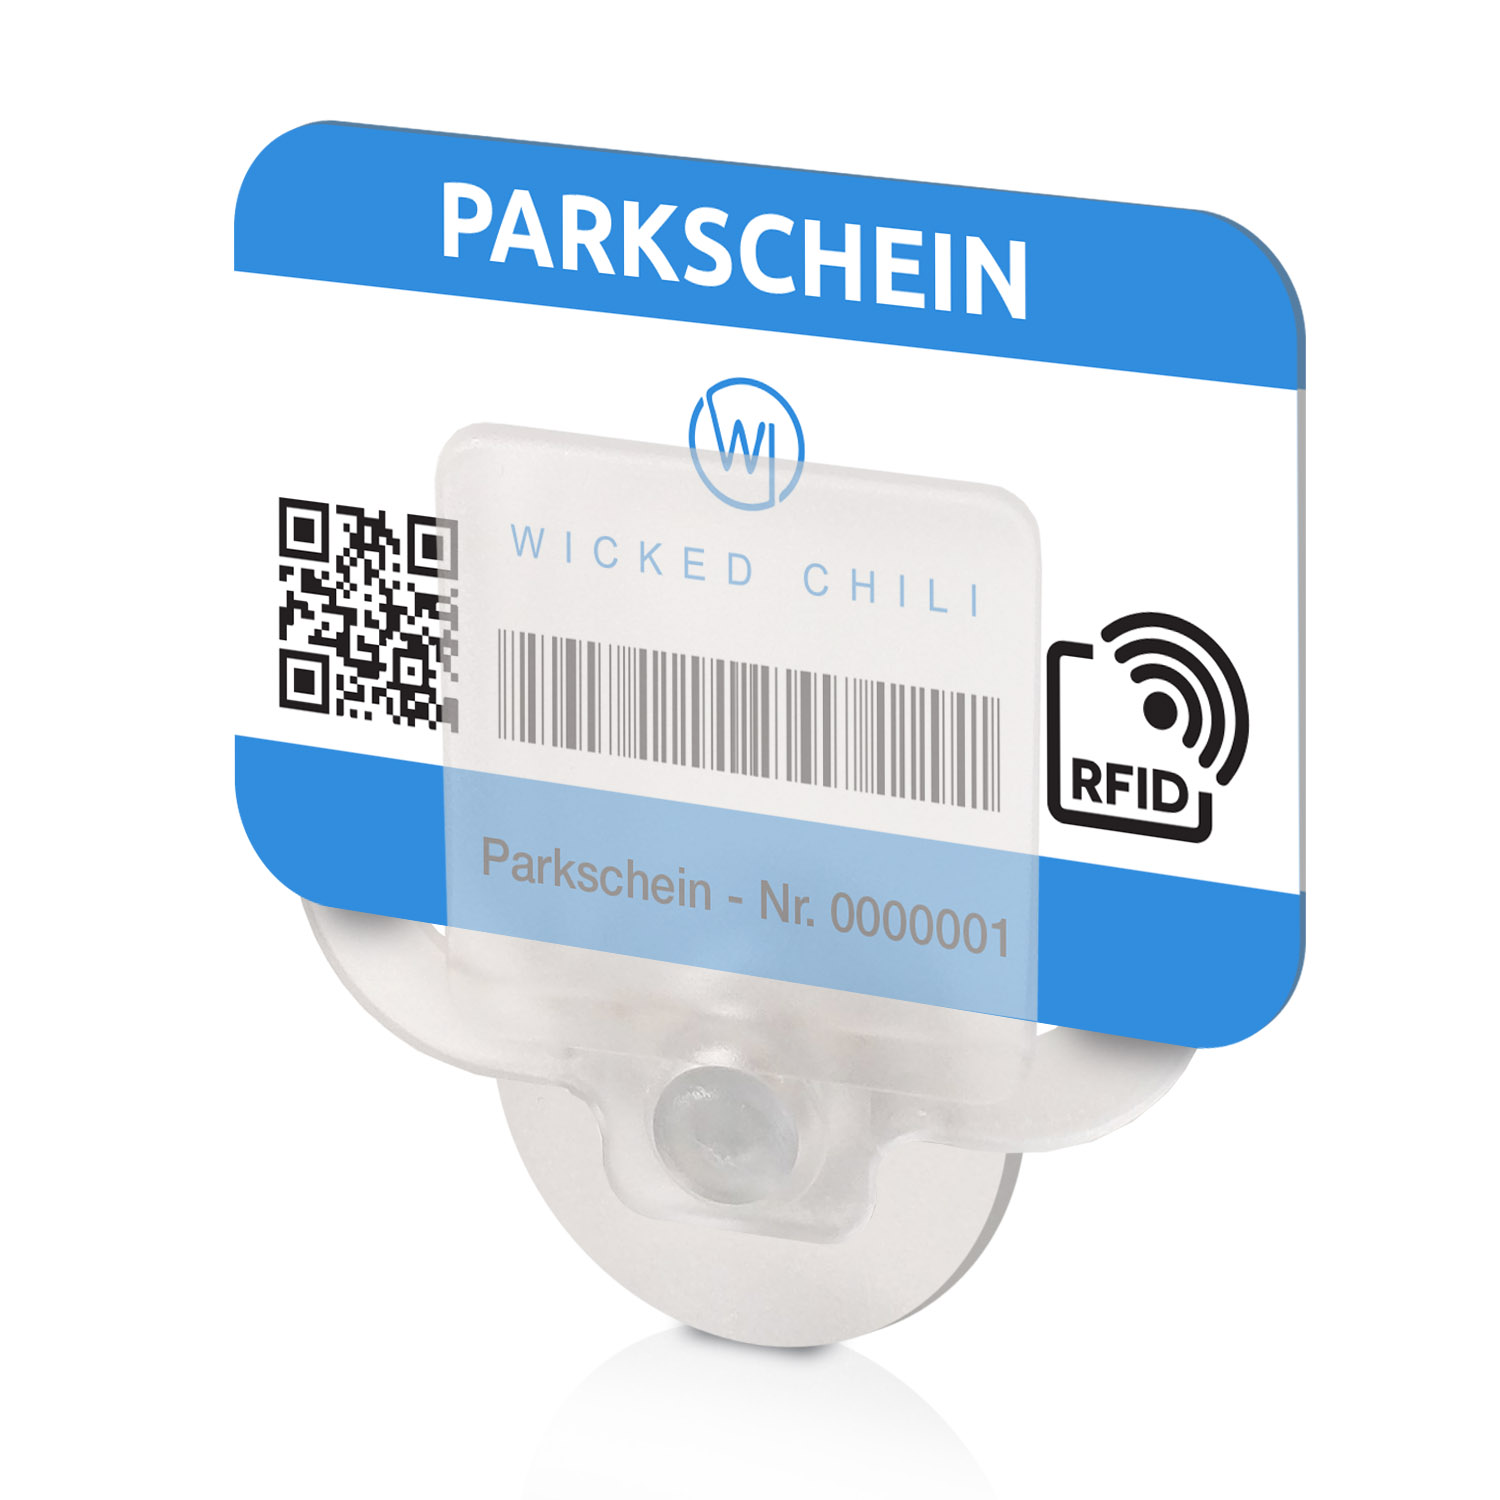 WICKED CHILI 4 Parkscheinhalter Saugnapf Windschutzscheibe Halterung Parkausweis Ticket Auto mit Kartenhalter Parkscheinhalterung, transparent für